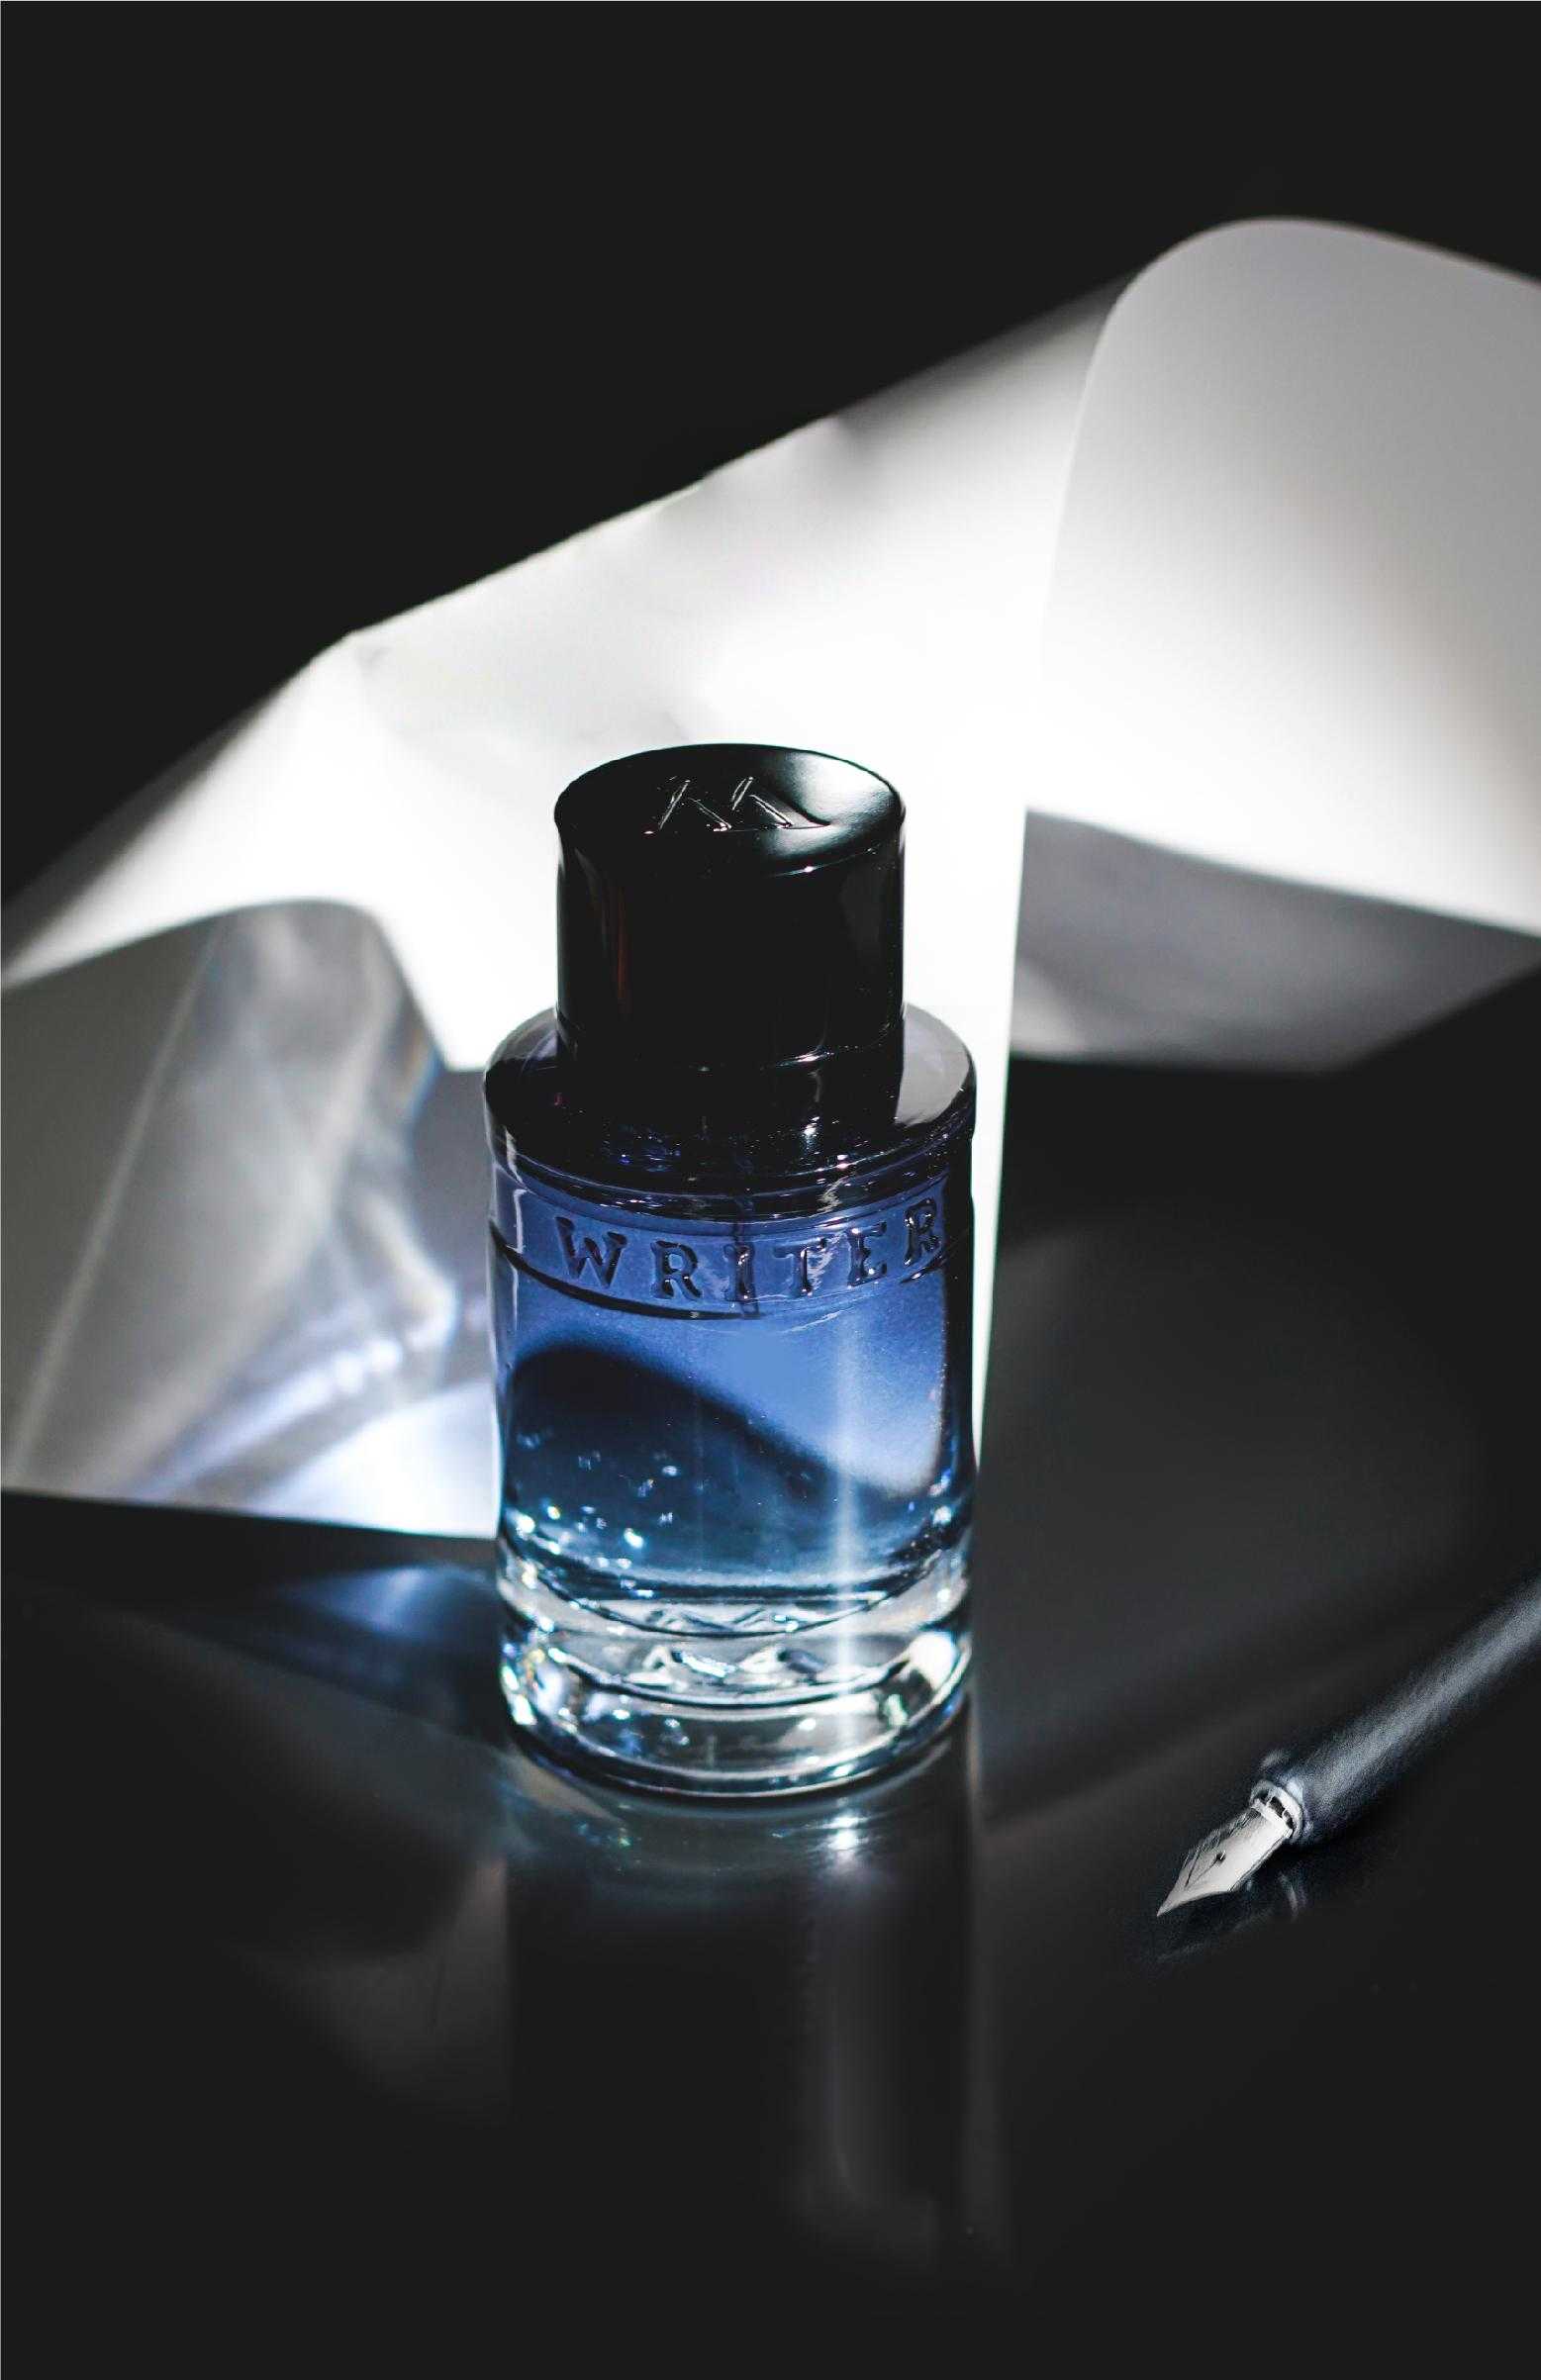 SPPC+Paris+Bleu+Perfume+for+Women+3.3+Oz+%2F+100+Ml+Eau+De+Parfum+Spray for  sale online